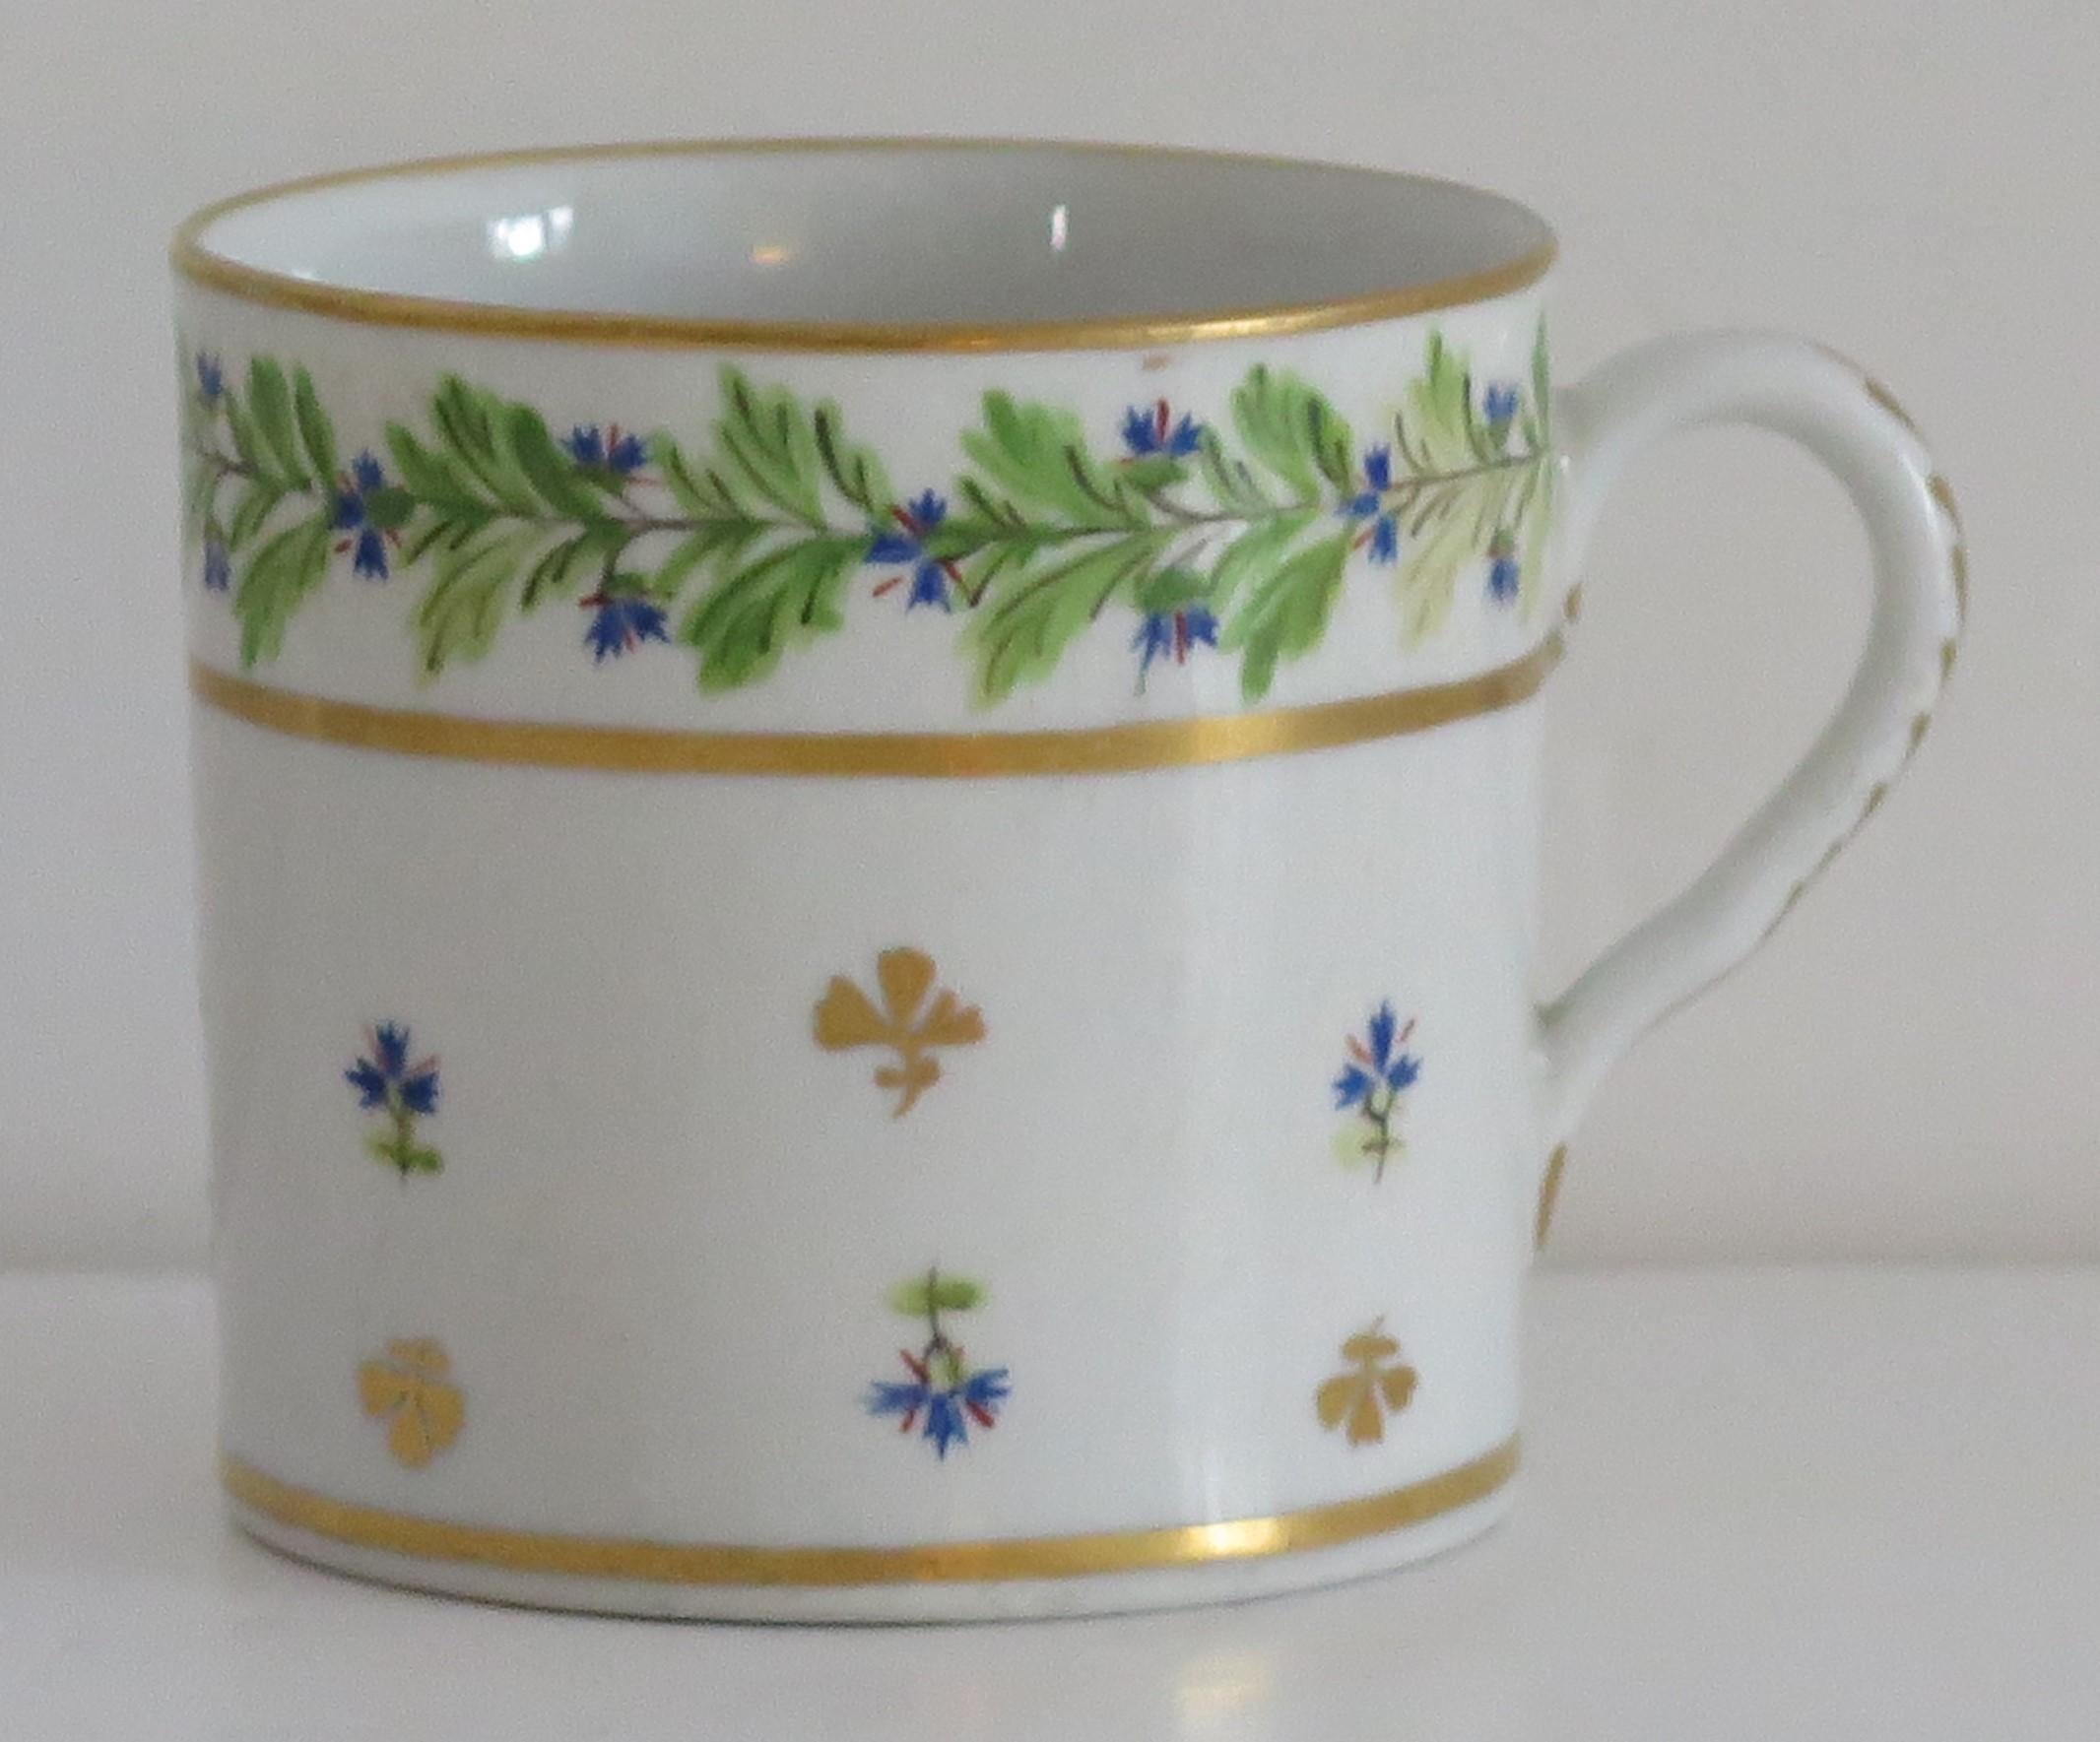 Il s'agit d'une boîte à café de bonne qualité que nous attribuons à la manufacture de porcelaine de Coalport, Shropshire, Angleterre, fabriquée pendant la période John Rose des années George 111, vers 1805.

La boîte à café est nominalement